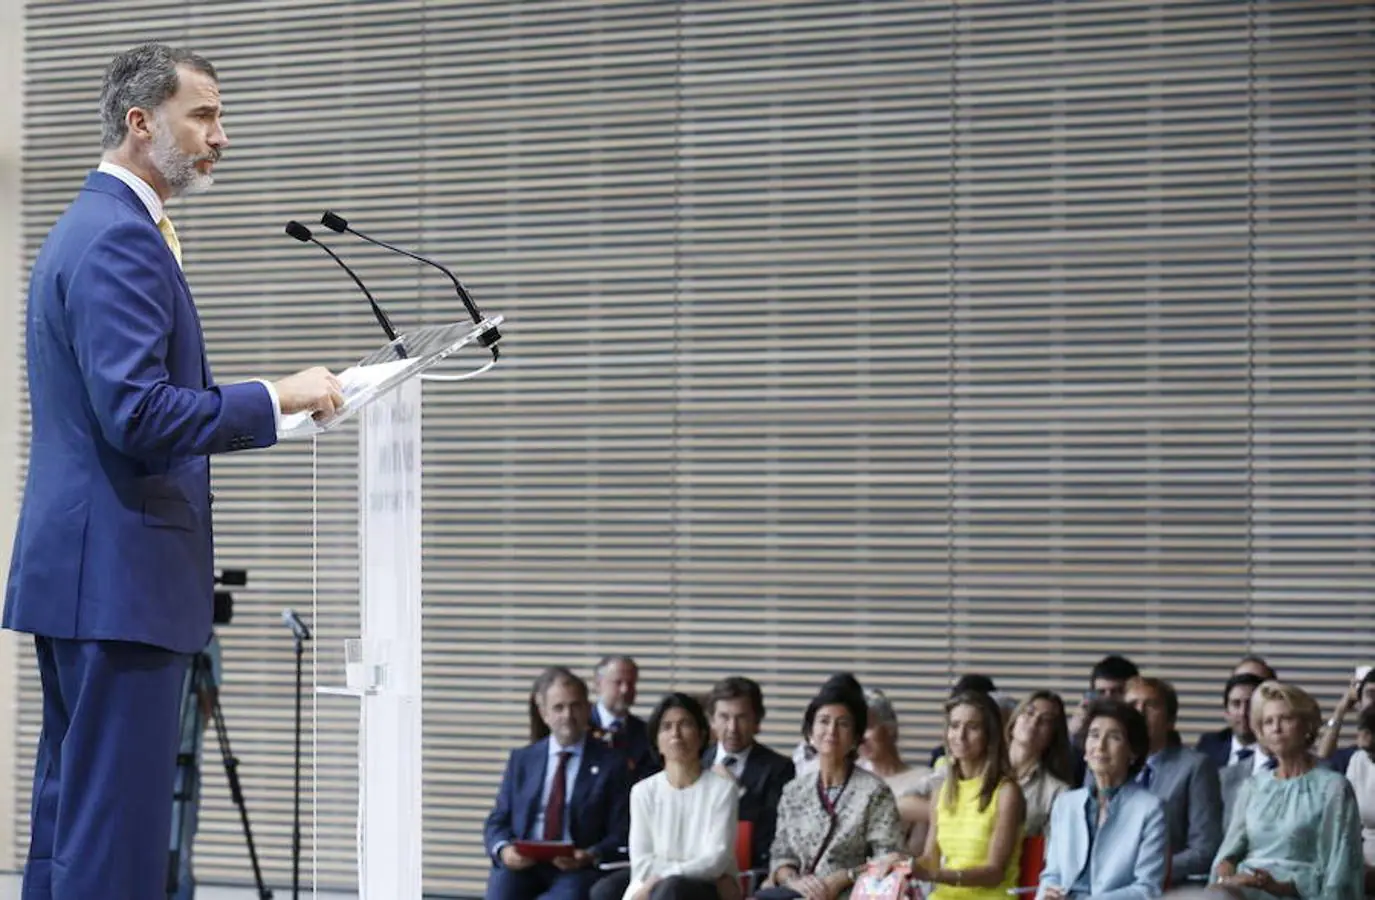 El Rey Felipe pronuncia un discurso en la inauguración del Centro Botín, el nuevo centro de arte que pone en marcha la Fundación Botín bajo un diseño de Renzo Piano y sobre la bahía de Santander.. Efe